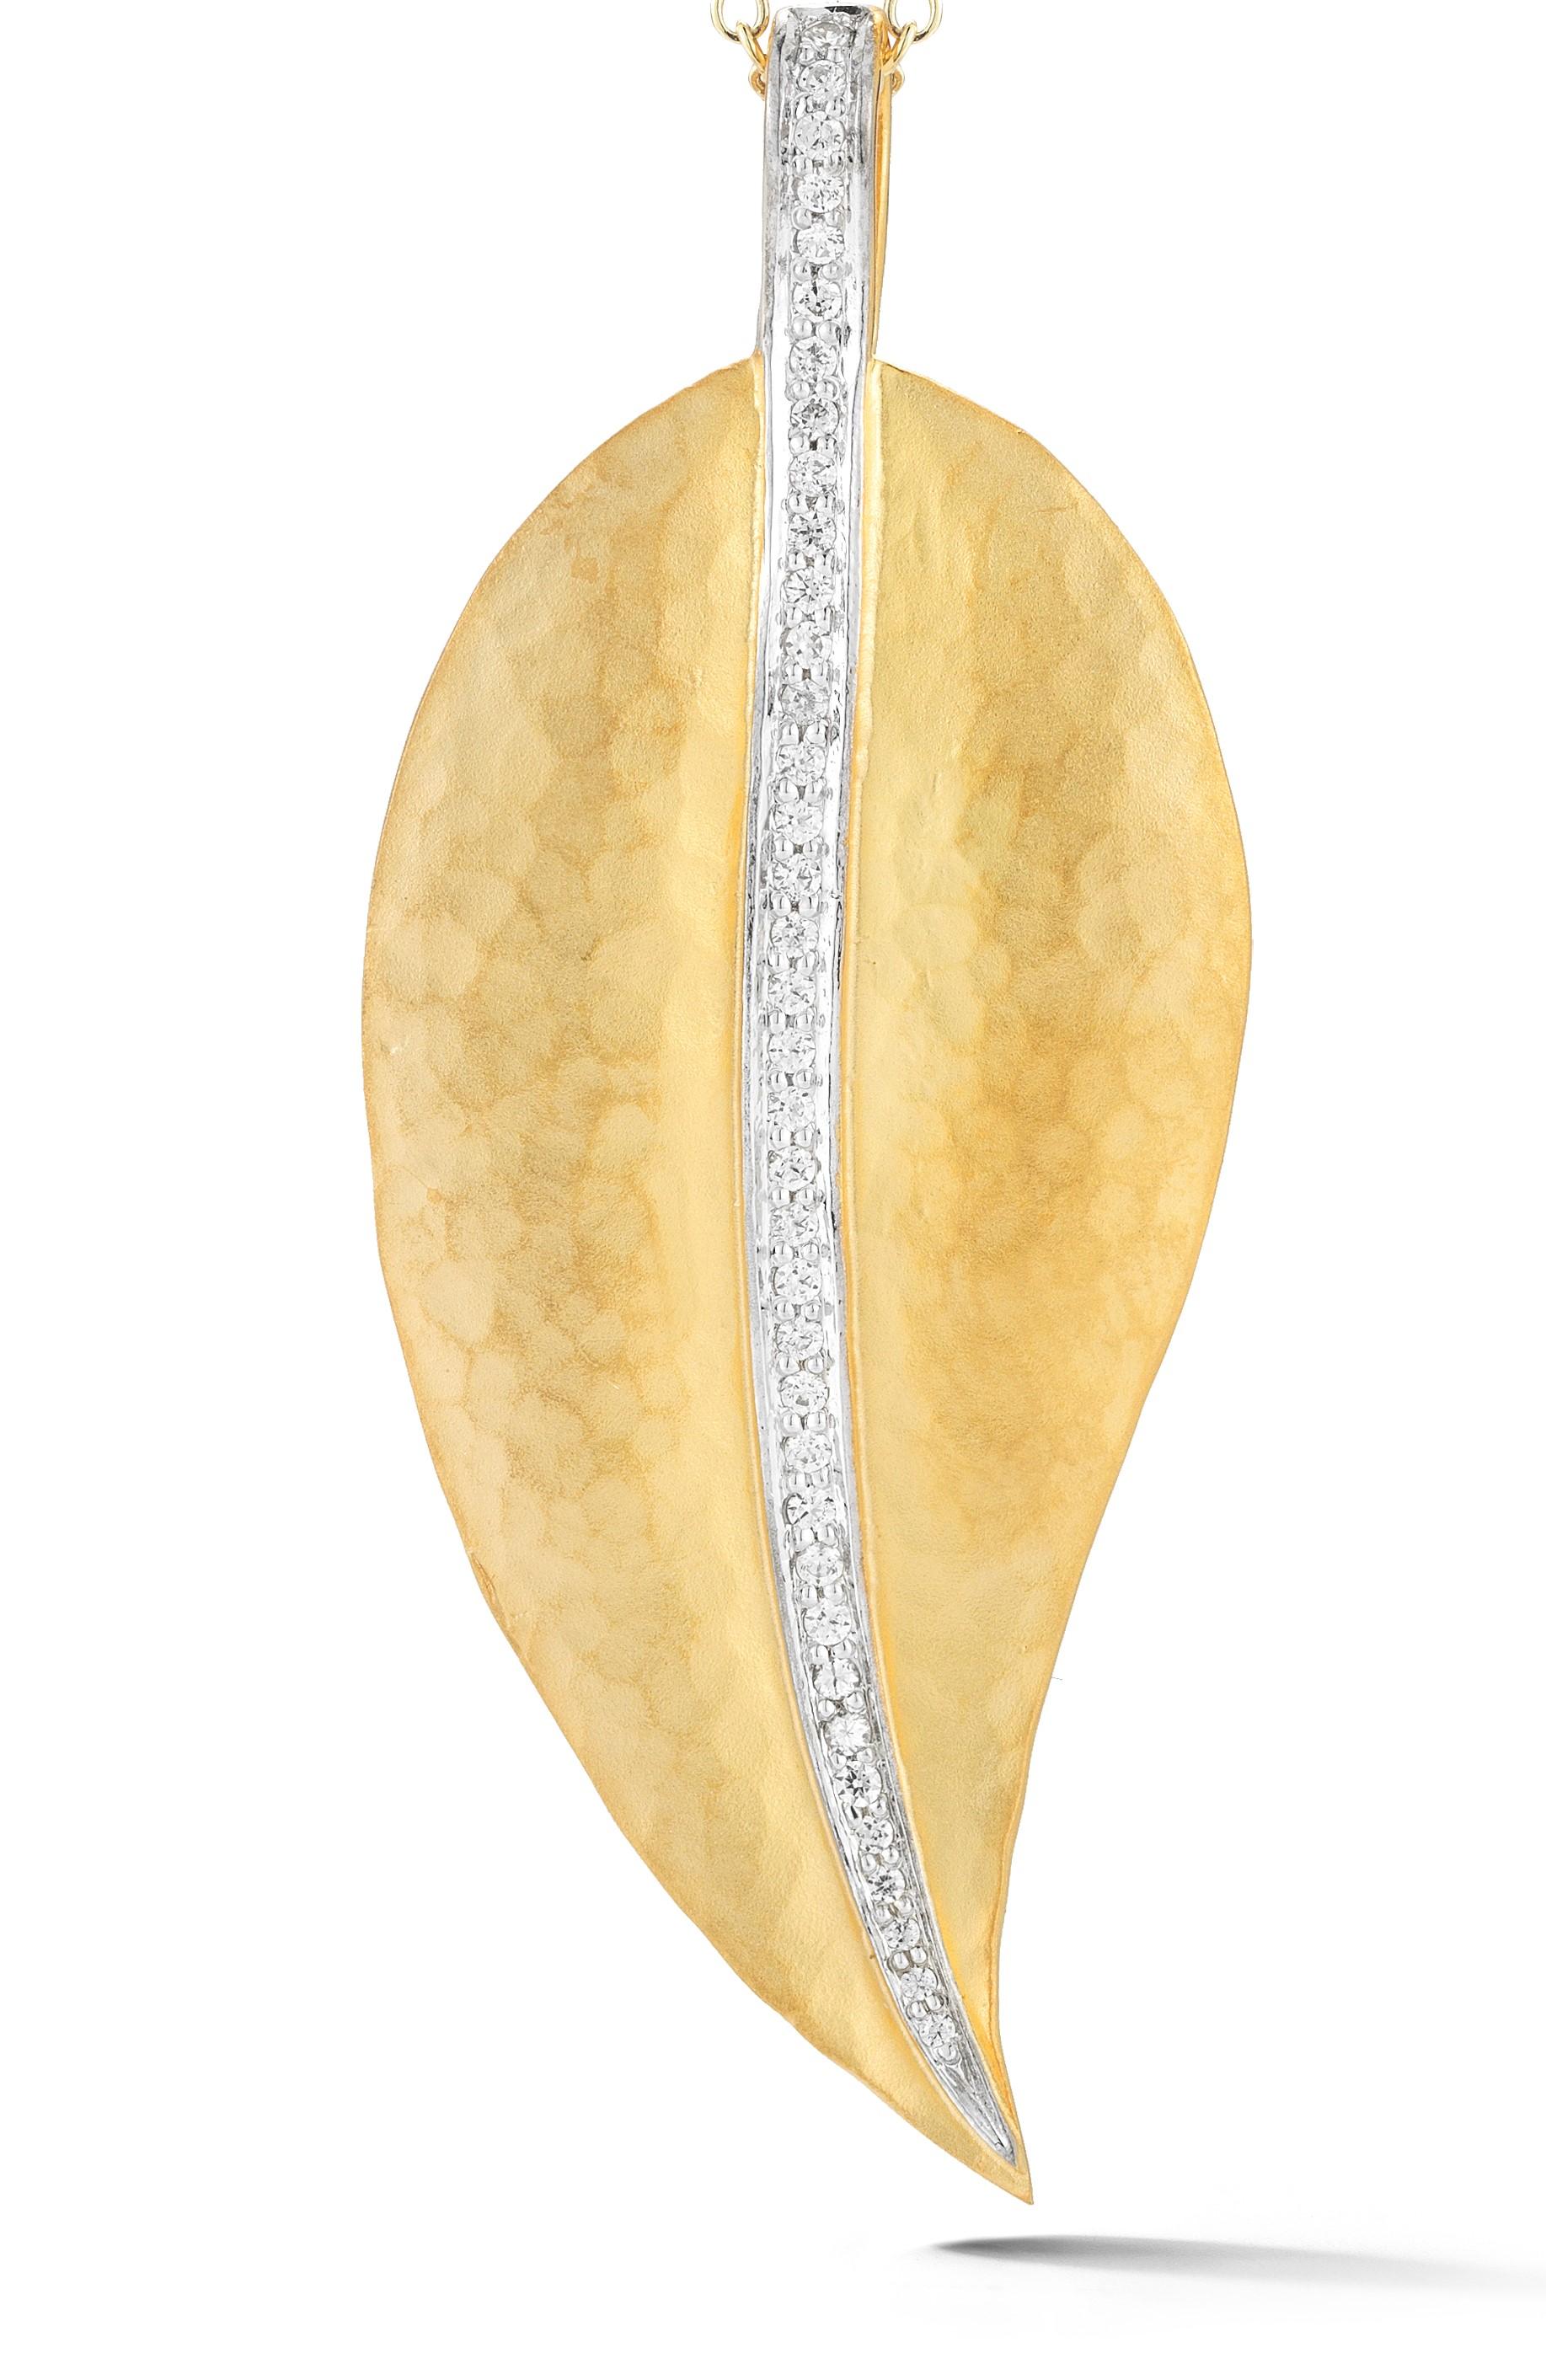 pendentif feuille en or jaune 14 carats mat et fini au marteau, rehaussé de 0,27 carats de diamants sertis en pavé, coulissant sur une chaîne Rolo de 16 po.
